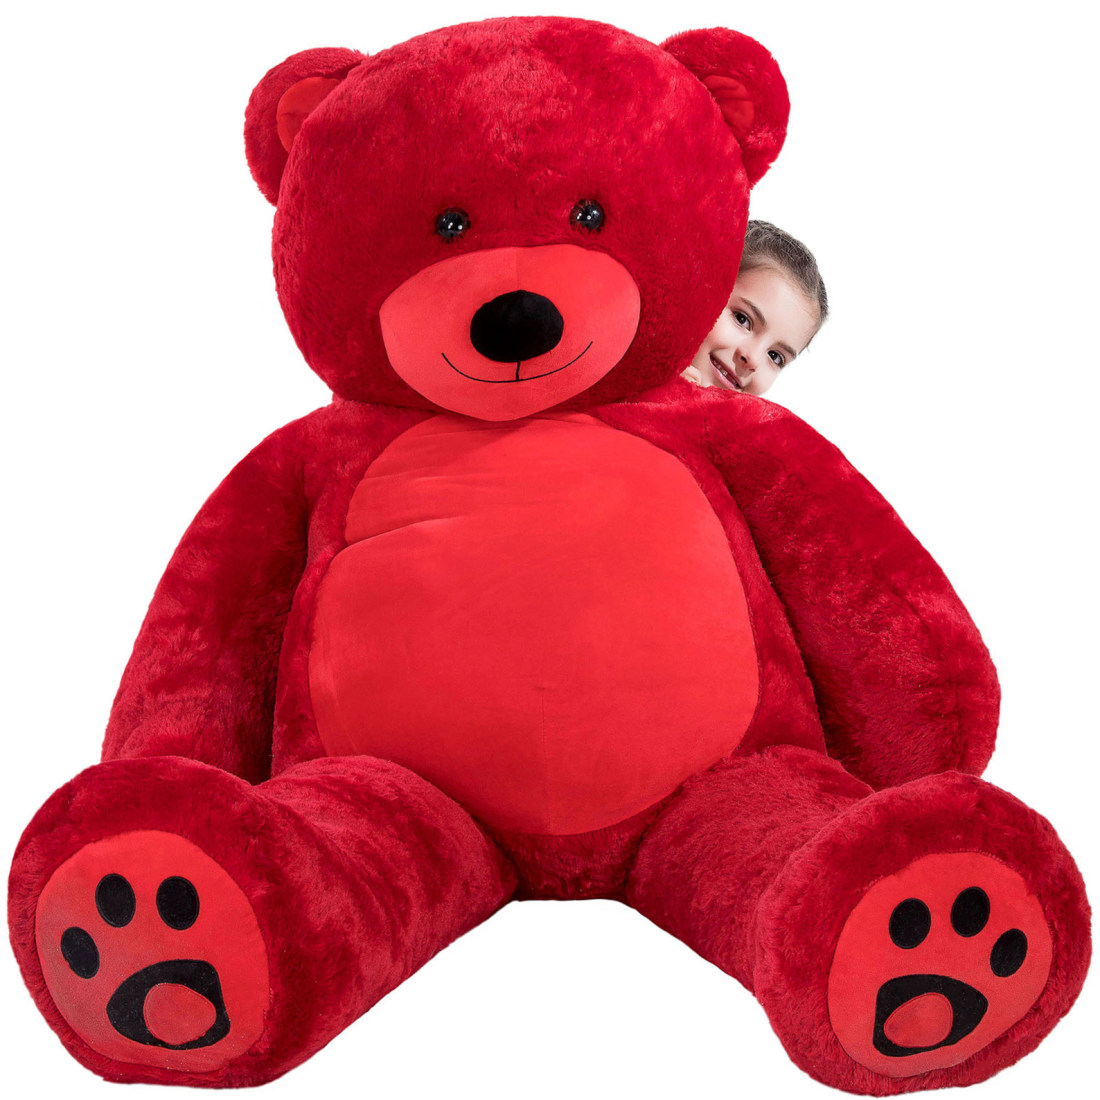 red big teddy bear